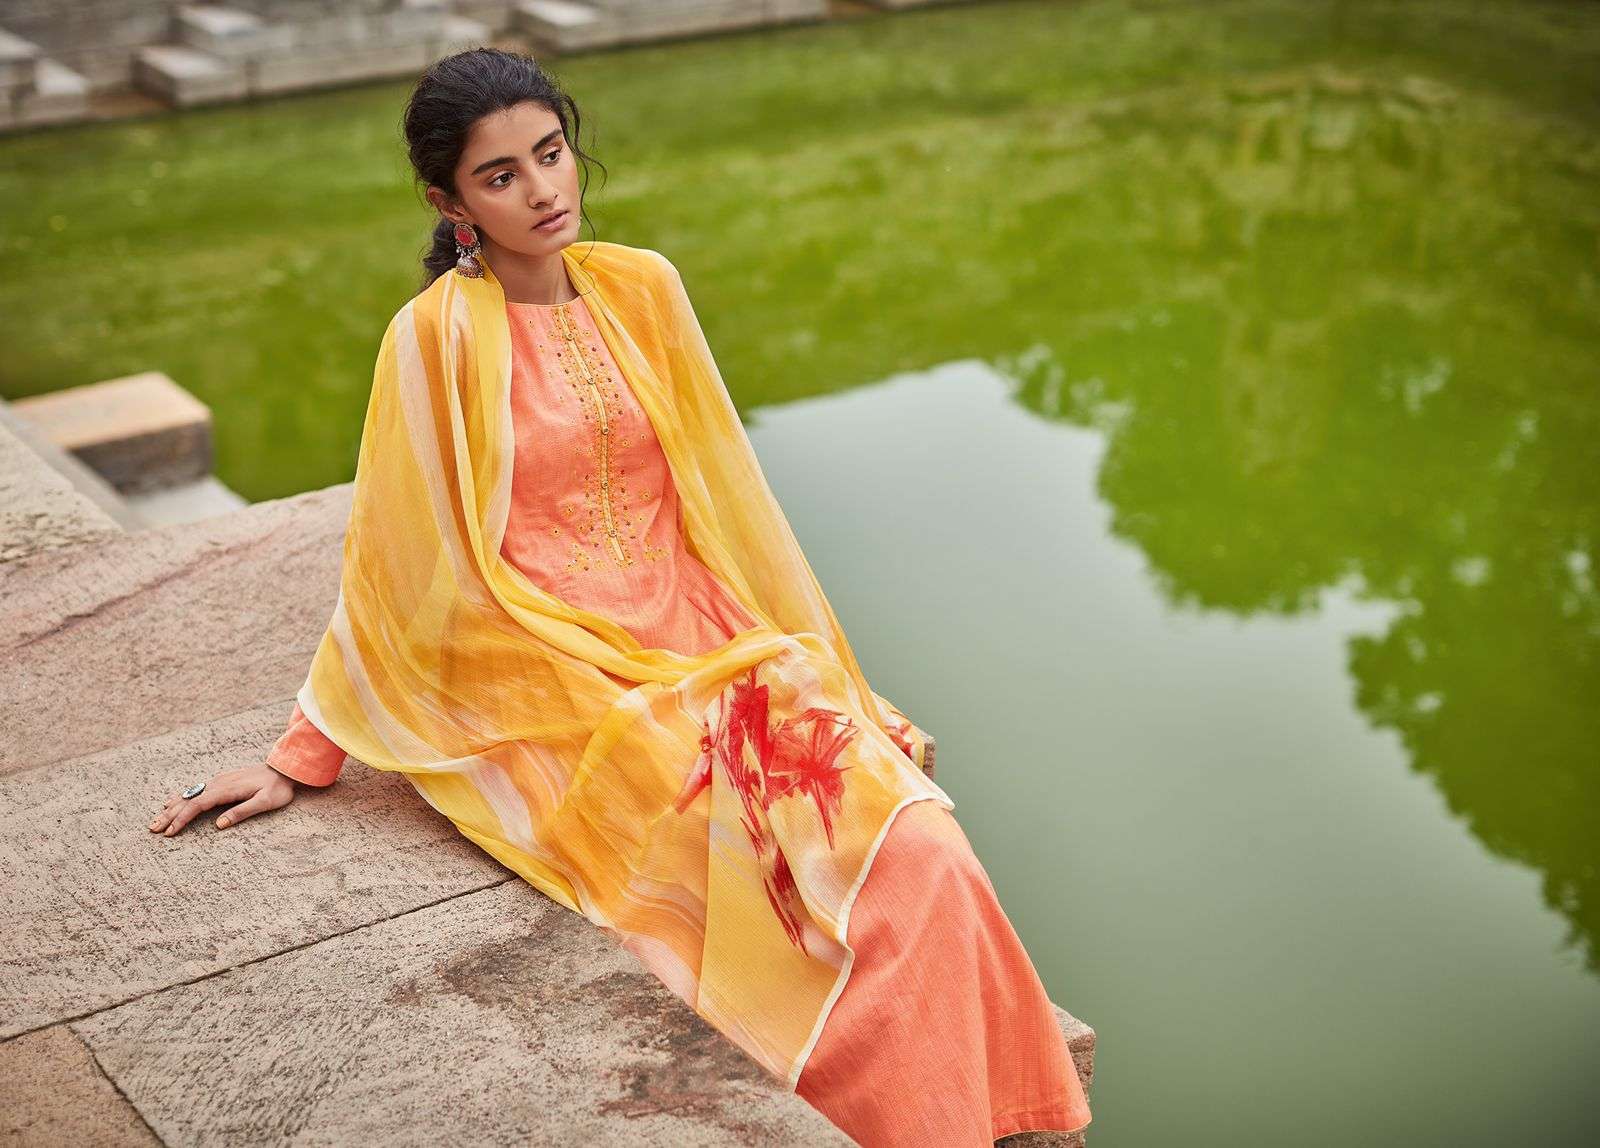 varsha fashion prisha designer punjabi salwar kameez collection surat